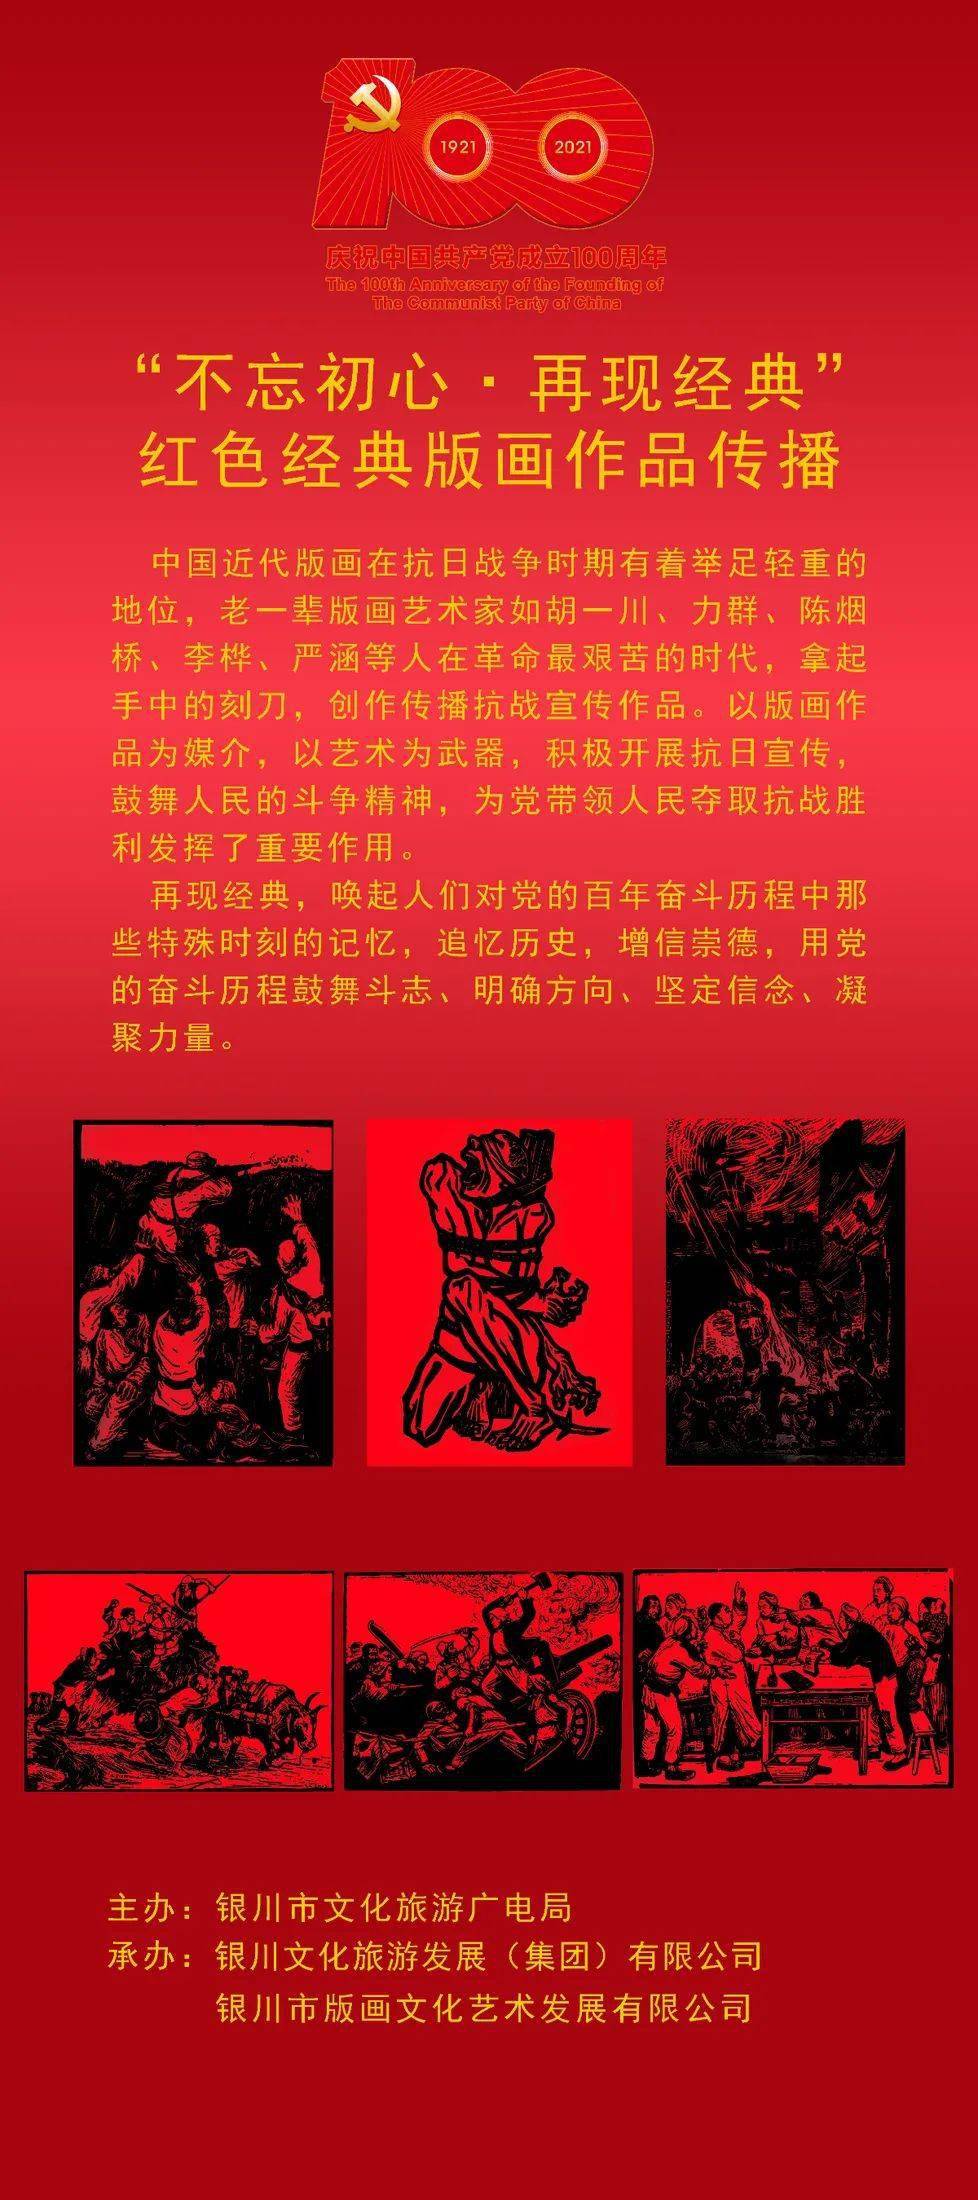 银川文化) 岁月峥嵘 不忘初心  活动主题:" 不忘初心·再现经典"红色